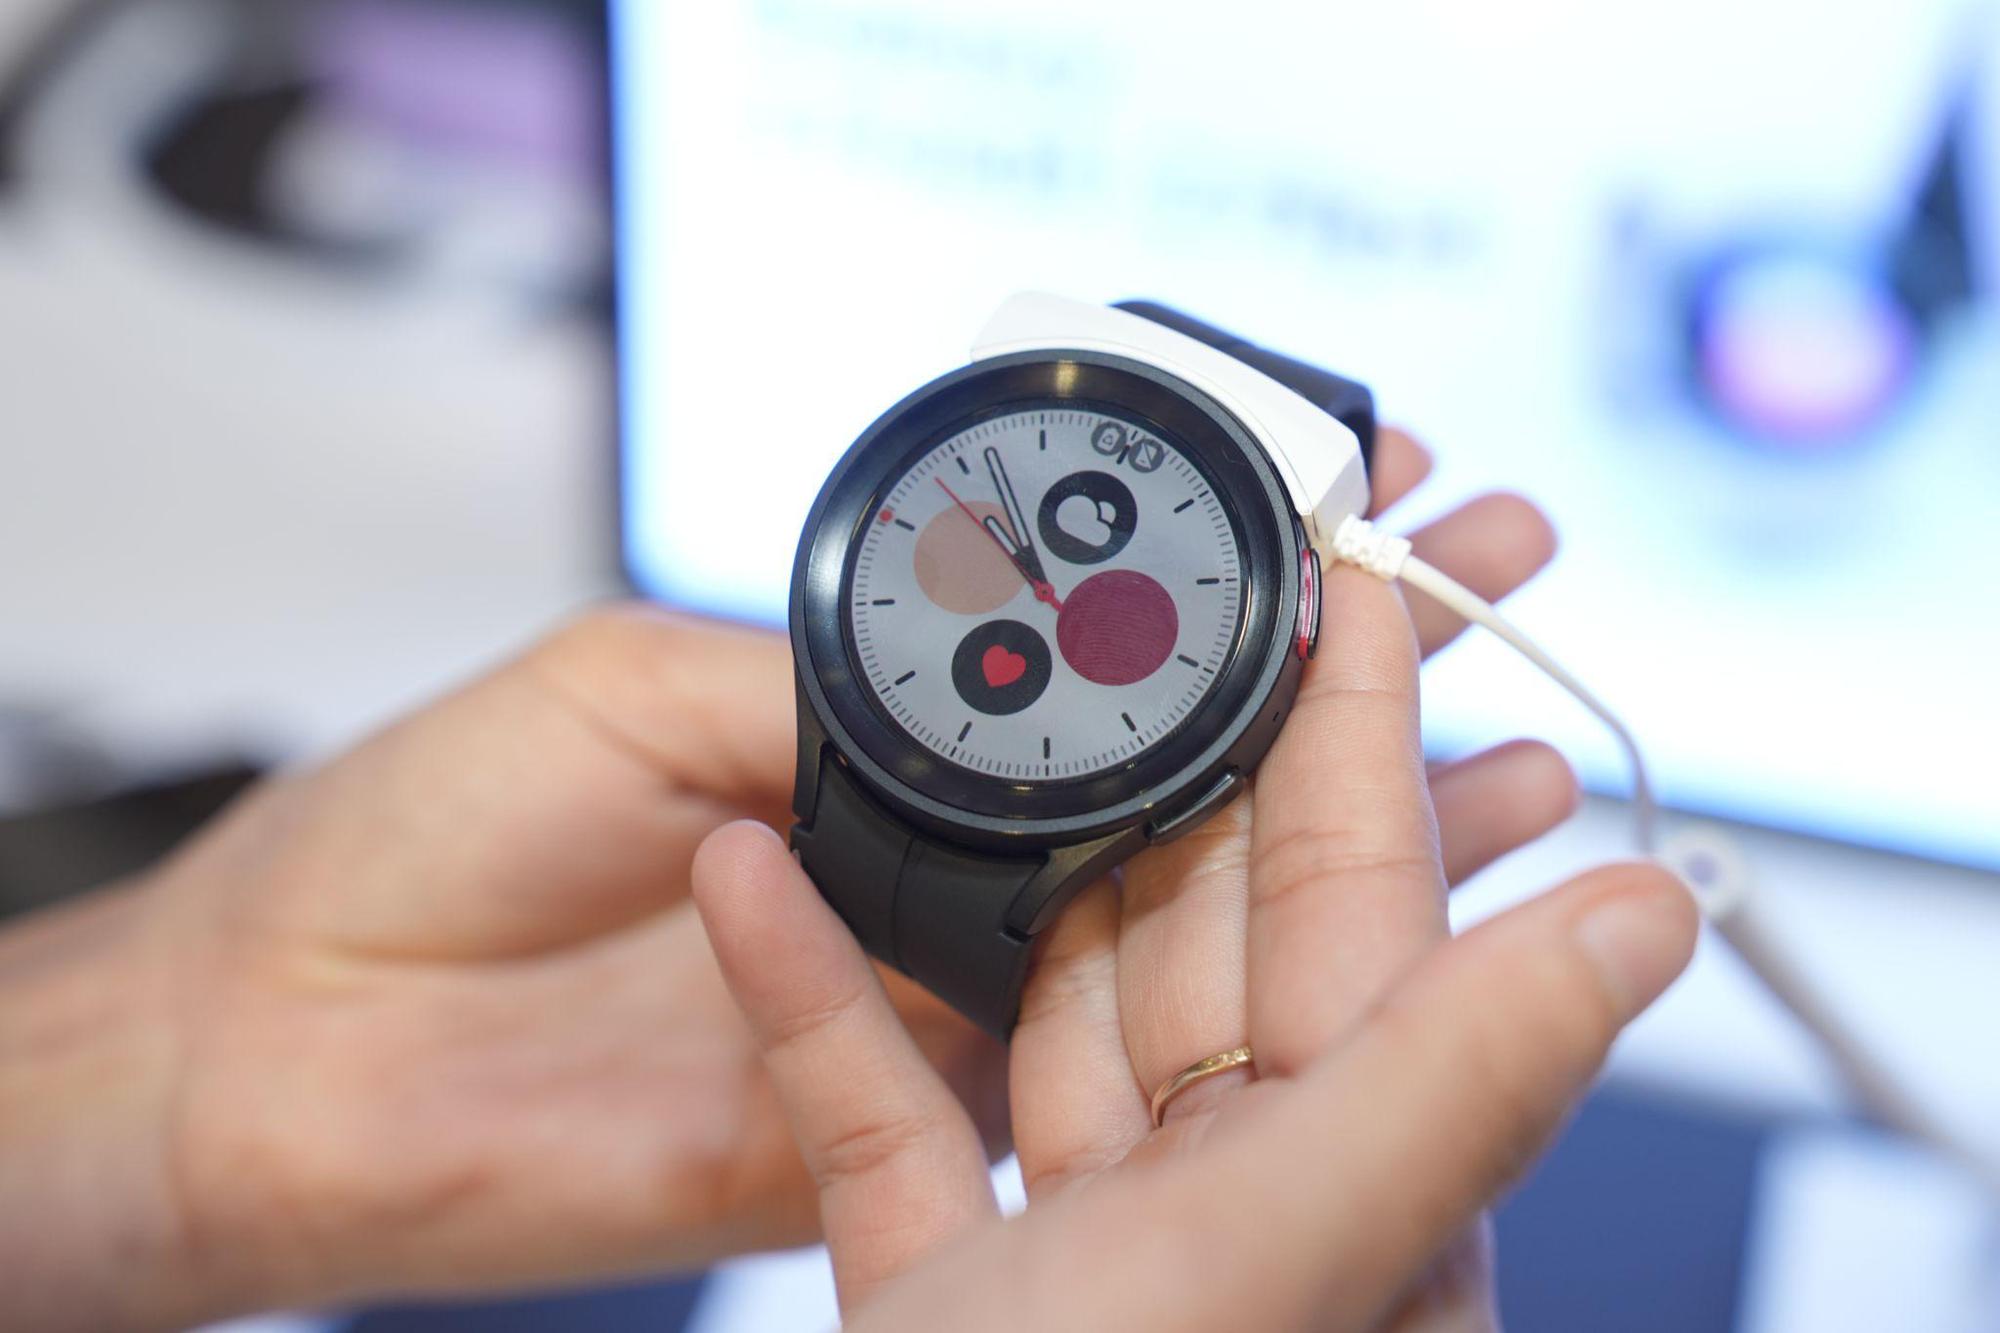 Samsung giải mã thông điệp “Greater than” với màn ra mắt hoành tráng của Galaxy Watch 5/ Buds2 Pro - Ảnh 6.